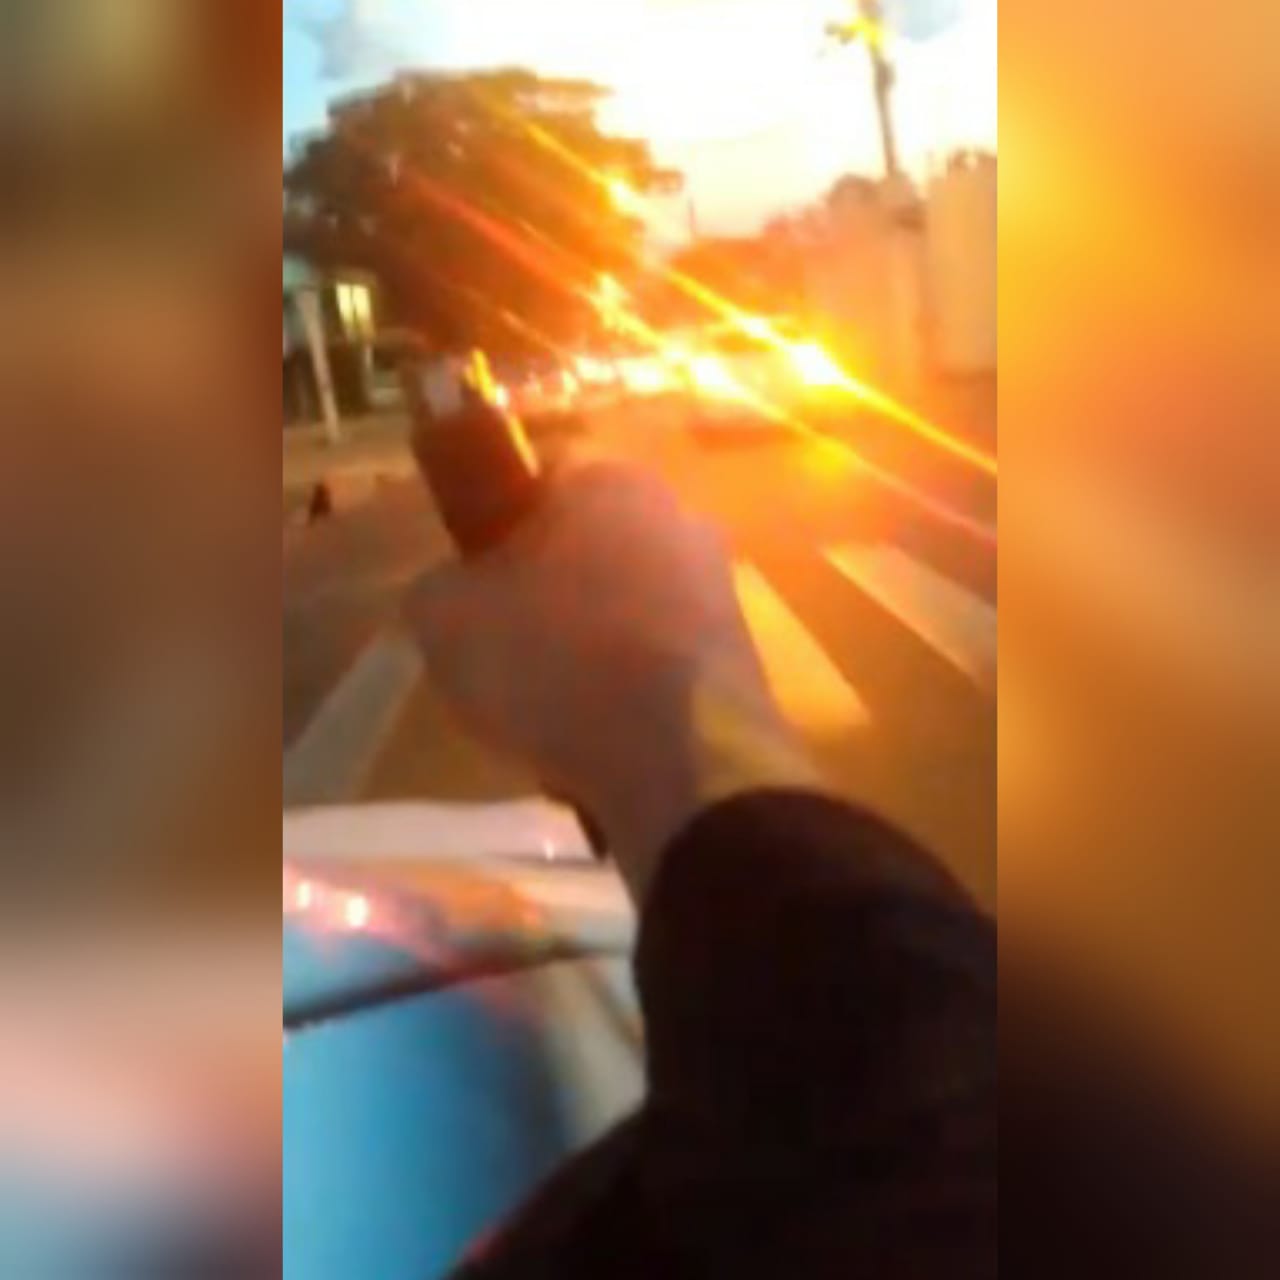 Um vídeo que circula nas redes sociais mostra uma tentativa de homicídio em uma avenida de grande movimentação em Goiânia. (Foto: reprodução/redes sociais)